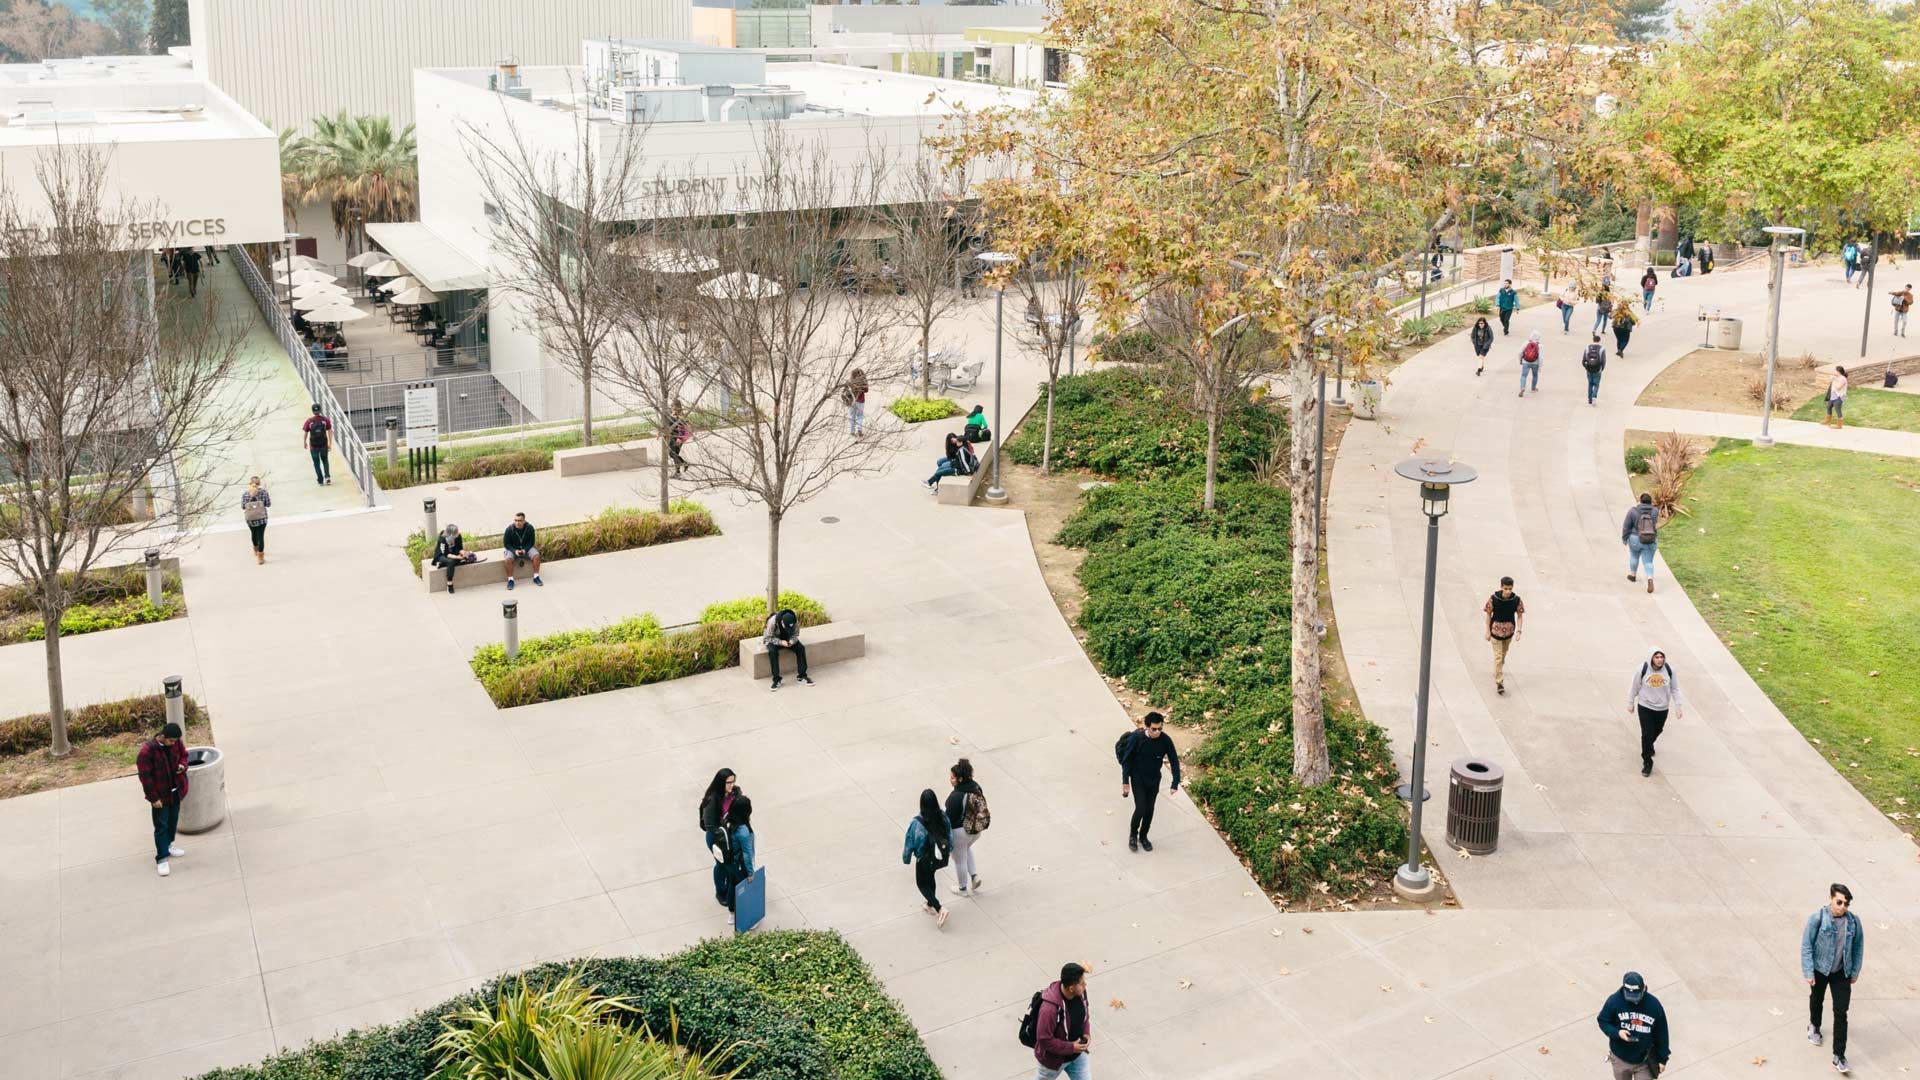 Um campus universitário com espaços verdes e passarelas povoadas por estudantes usando mochilas